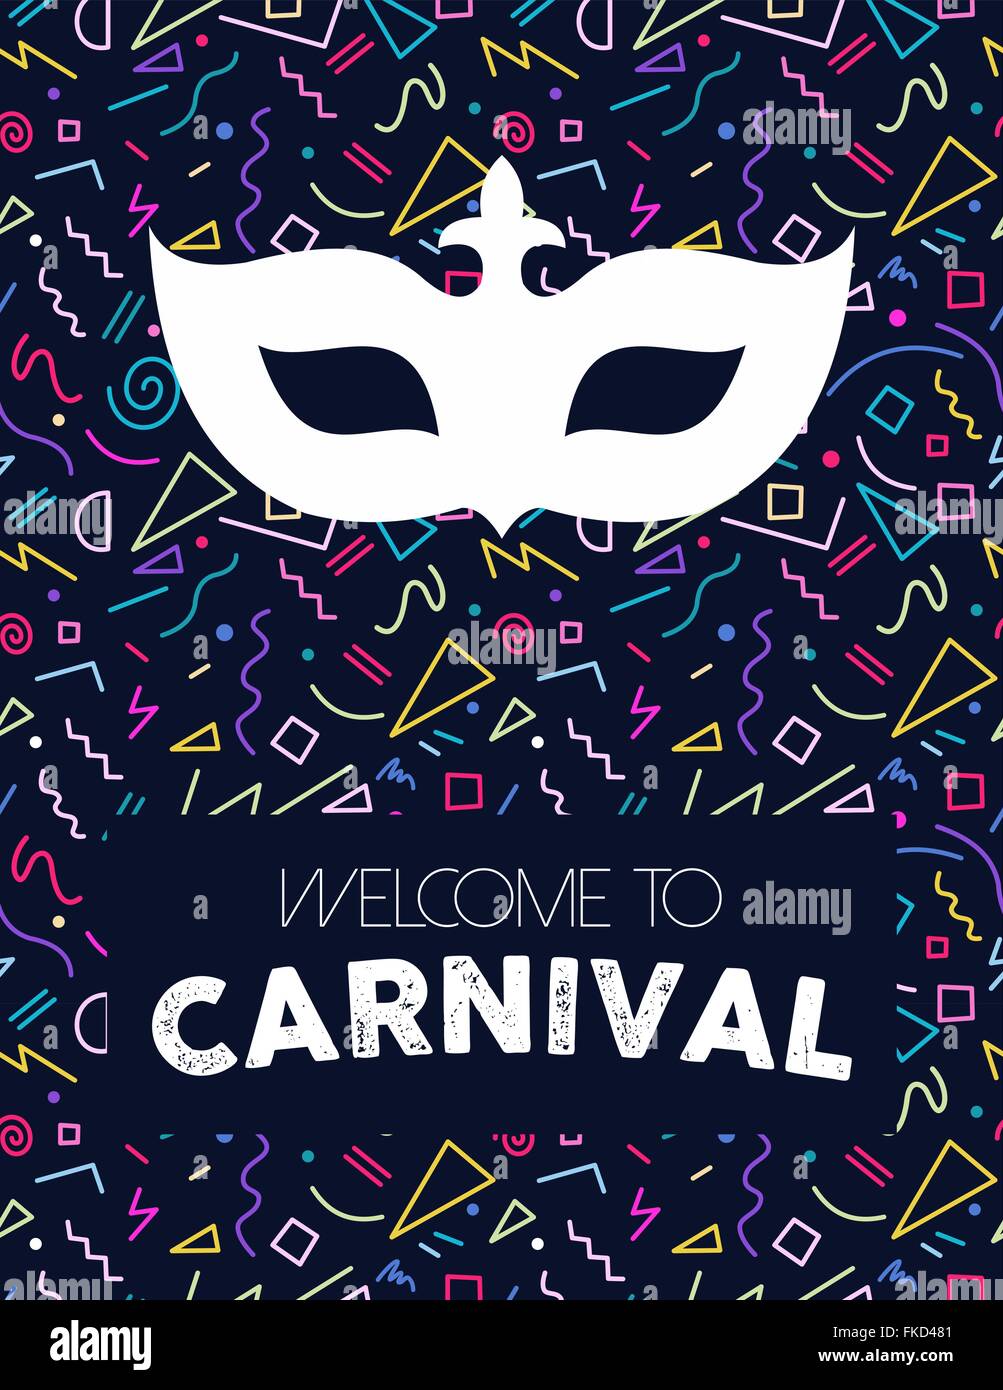 Ligne rétro coloré art fond avec Carnival mask silhouette et étiquette de texte. Vecteur EPS10. Illustration de Vecteur